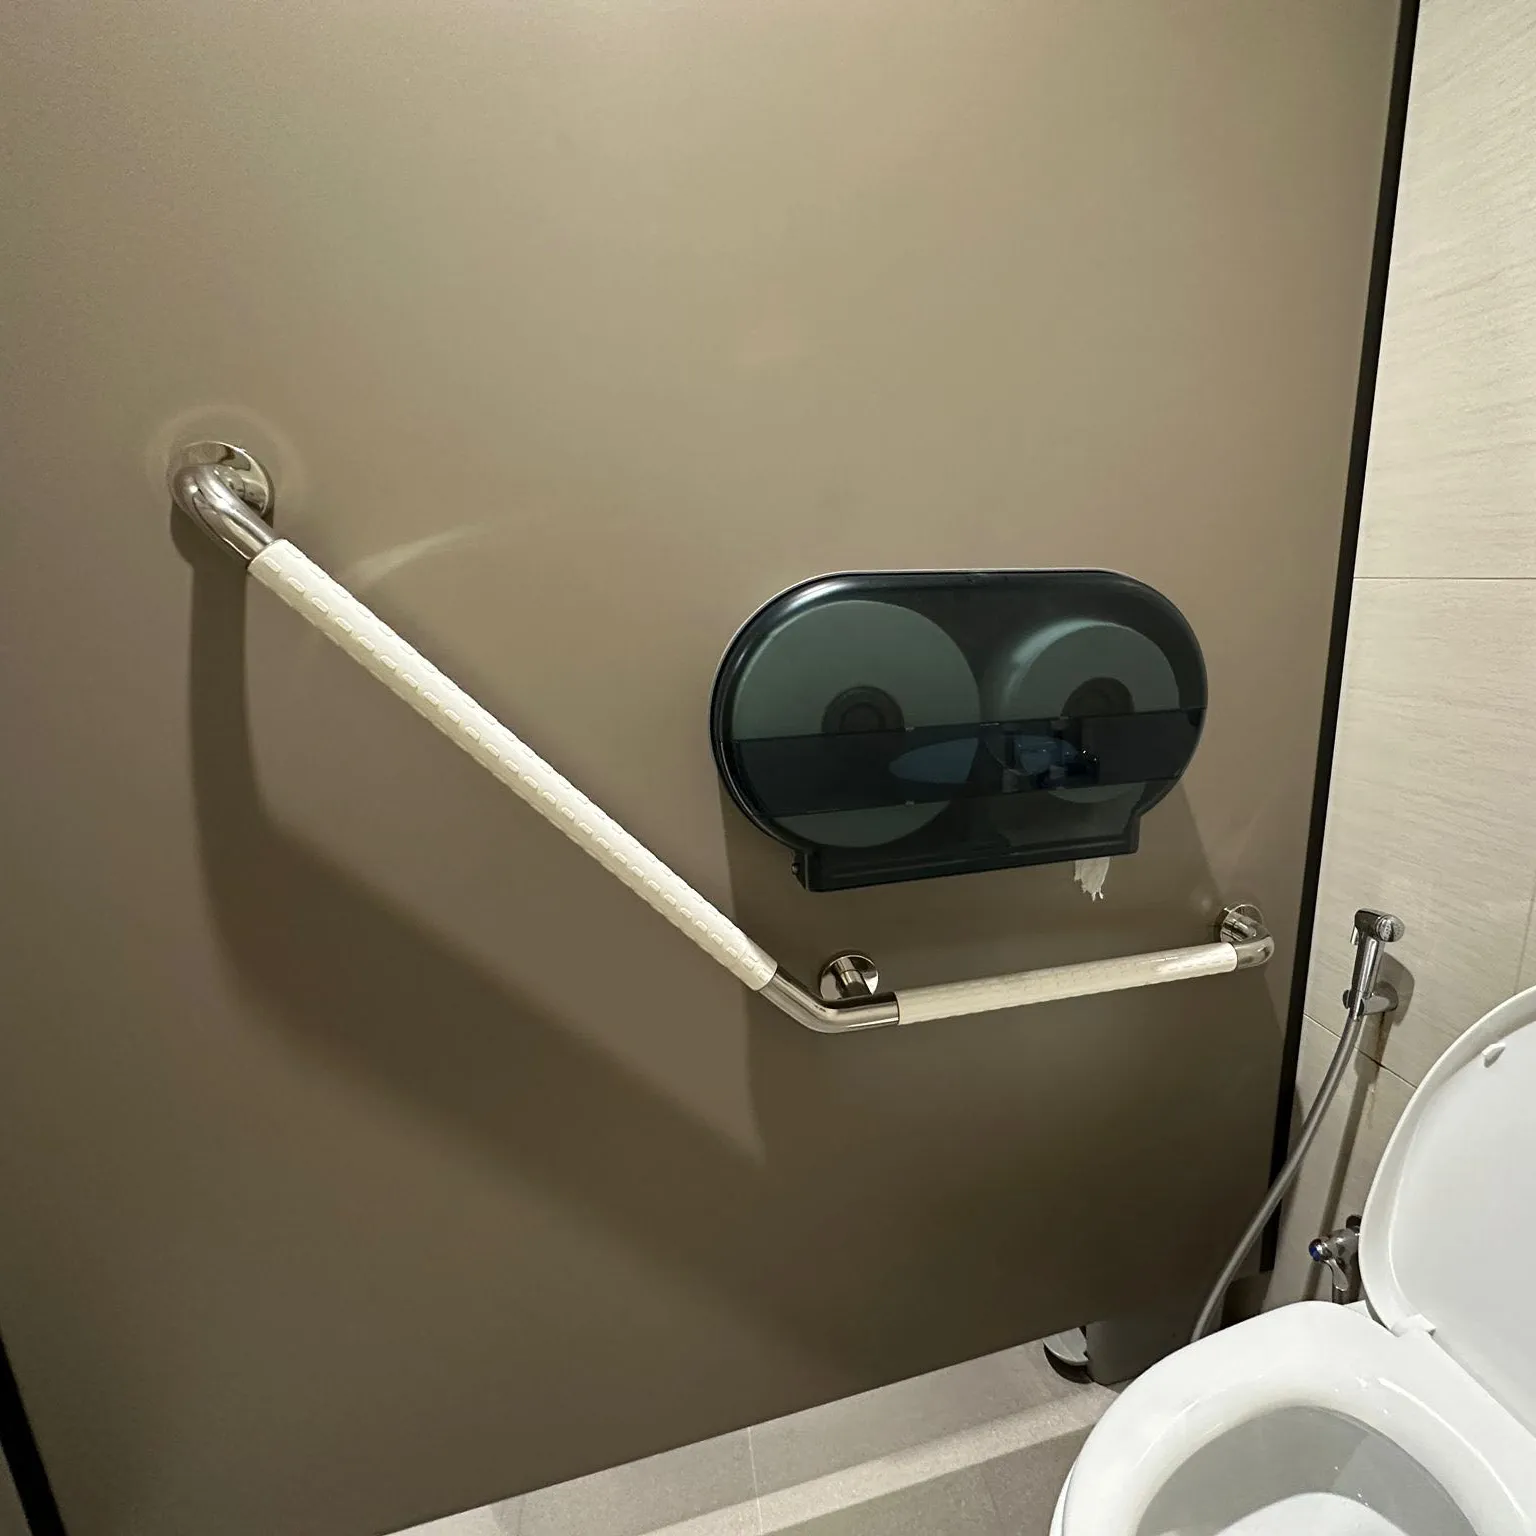 Bathroom 135 degree Grab Rail Toilet Handle V Shape SS Elbow Wall Mounted Toilet Grab Bar